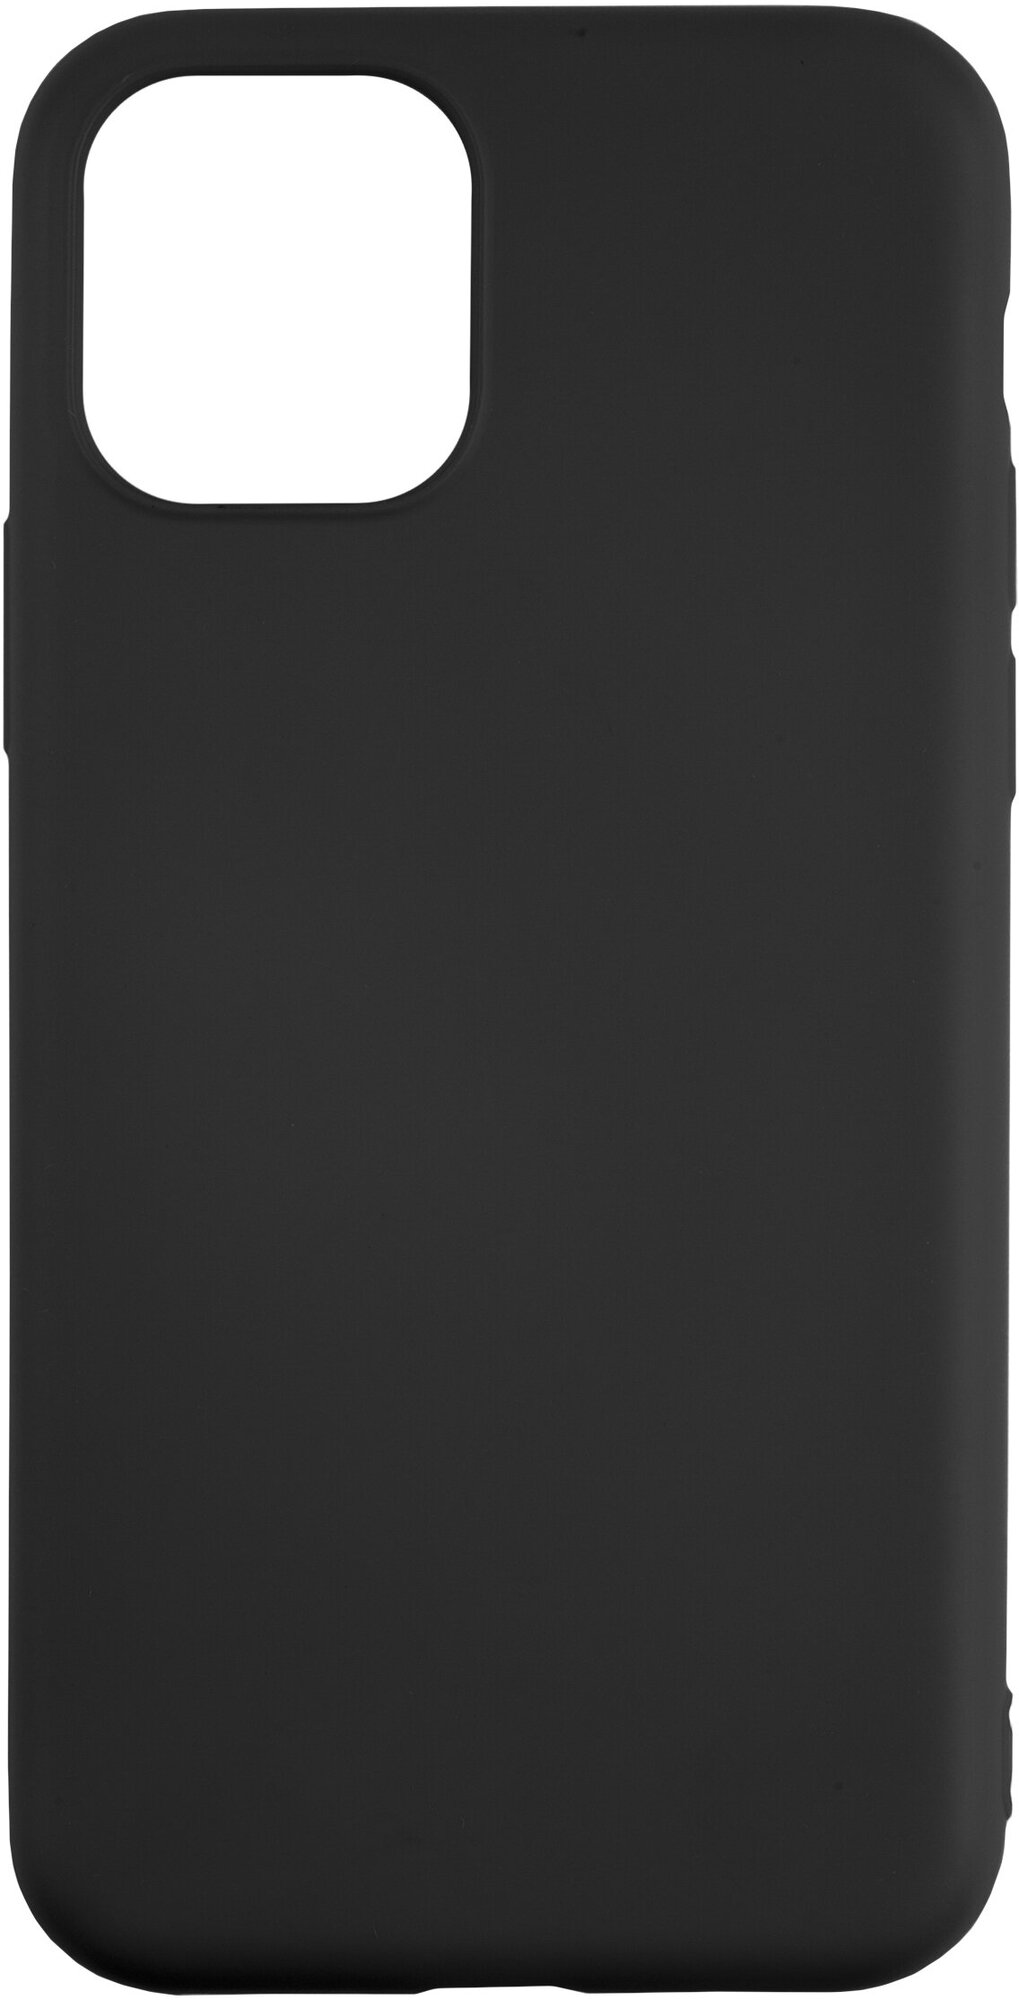 Накладка на iPhone 11 Pro Max 6.5"/Защита от царапин/Бампер на Айфон 11 Про Макс/Защитный чехол-крышка для Apple/Силиконовый чехол черный